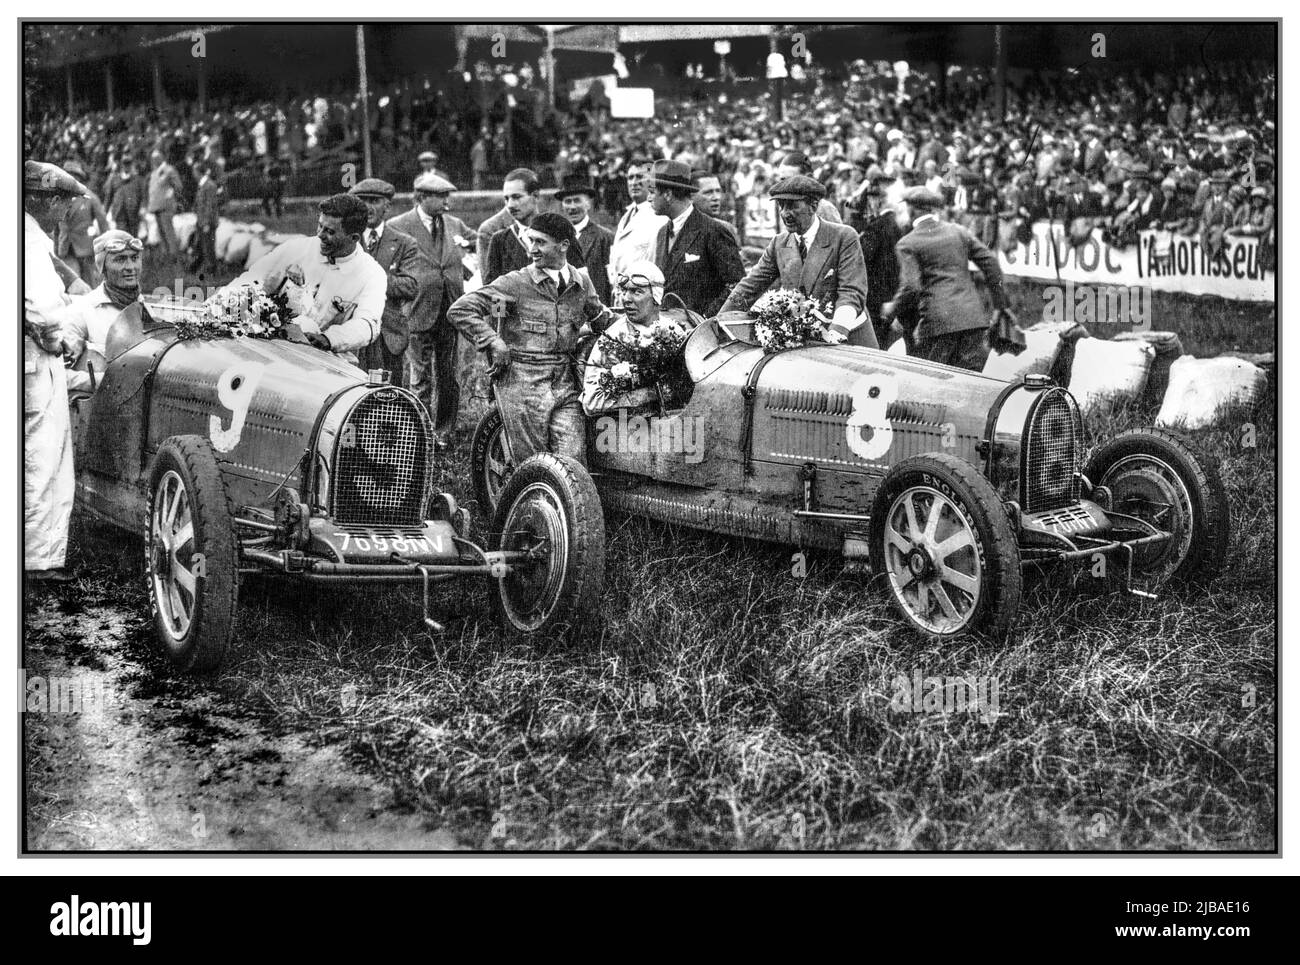 Vintage 1930 Belge Grand Prix Winners (à gauche) Louis Chiron d'abord au numéro 9 Bugatti et Guy Bouriat deuxième au numéro 8., course également connue sous le nom de VII Grand Prix d'Europe a été une course automobile du Grand Prix qui s'est tenue à Spa-Francorchamps le 20 juillet 1930. La course s'est déroulée sur 40 tours d'un circuit de 14,914 km pour une distance totale de 596,560 km et a été gagnée par Louis Chiron pilotant un Bugatti. Banque D'Images